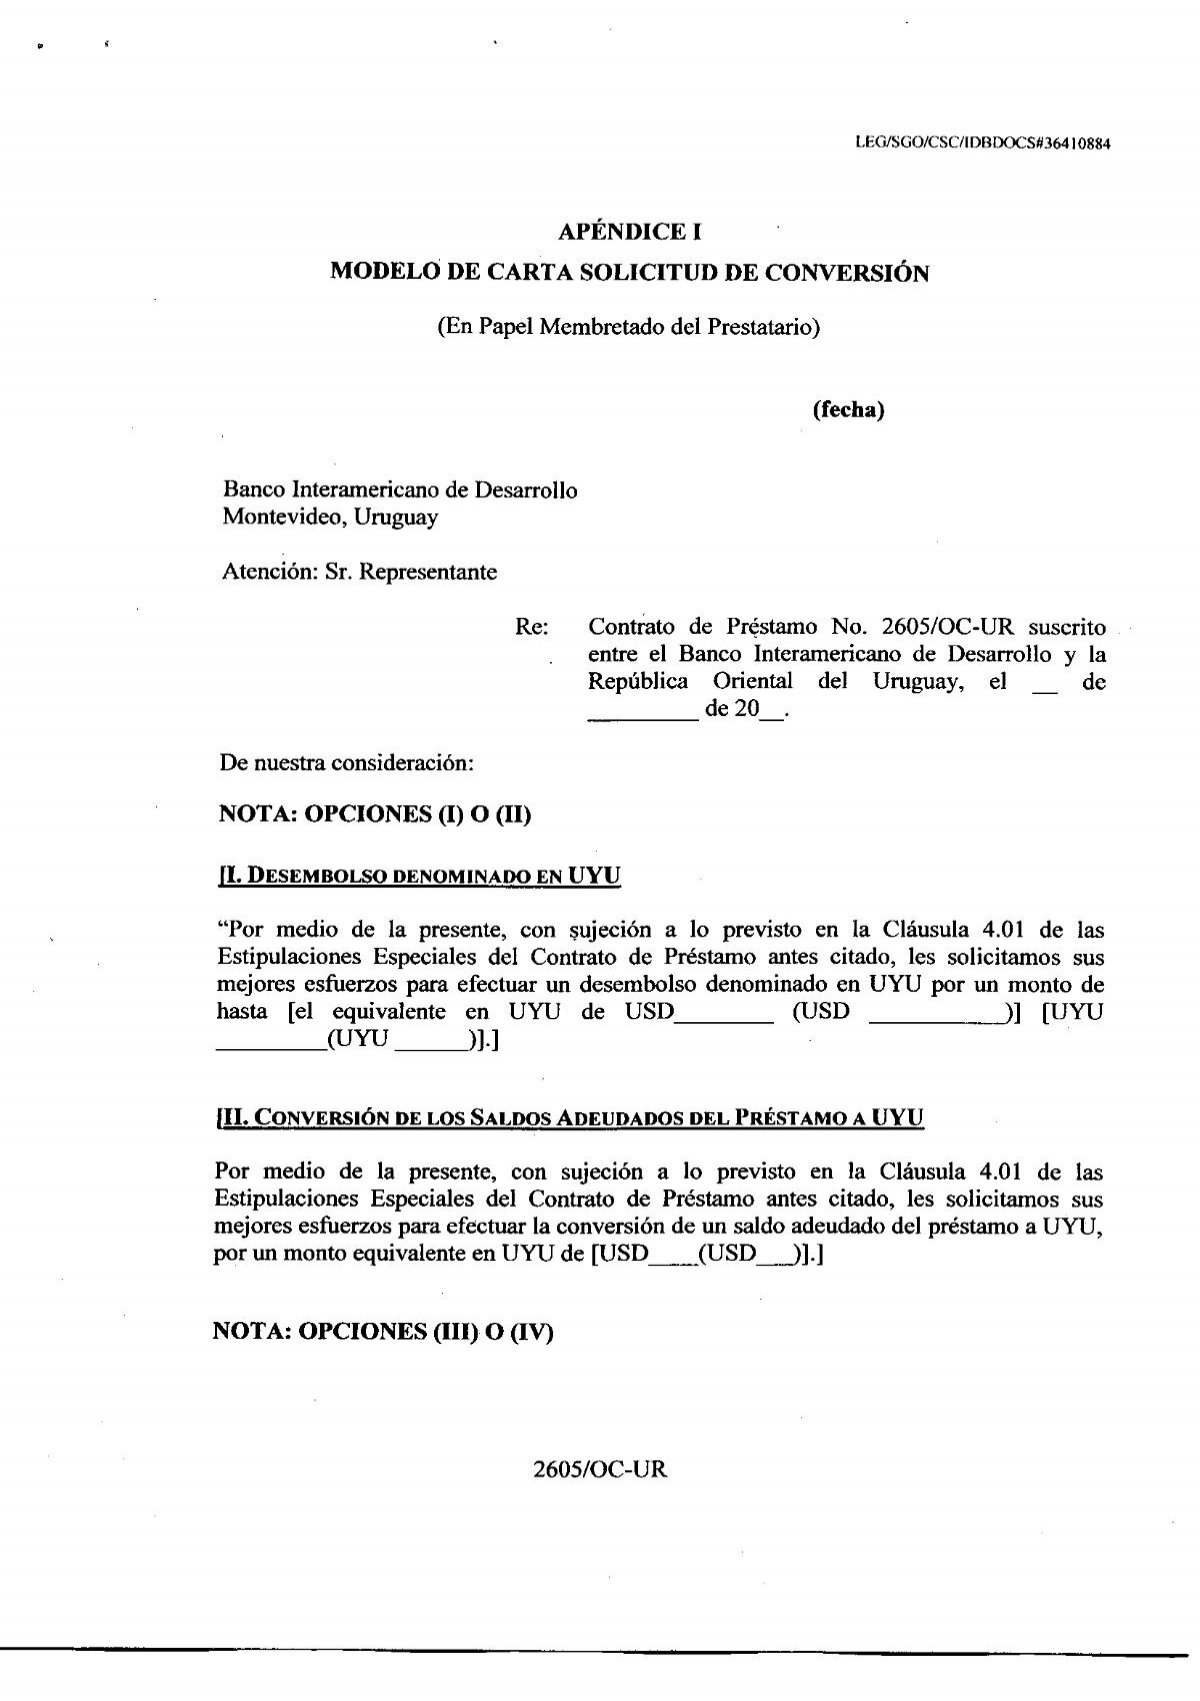 modelo de carta solicitud de conversión - Presidencia de la República